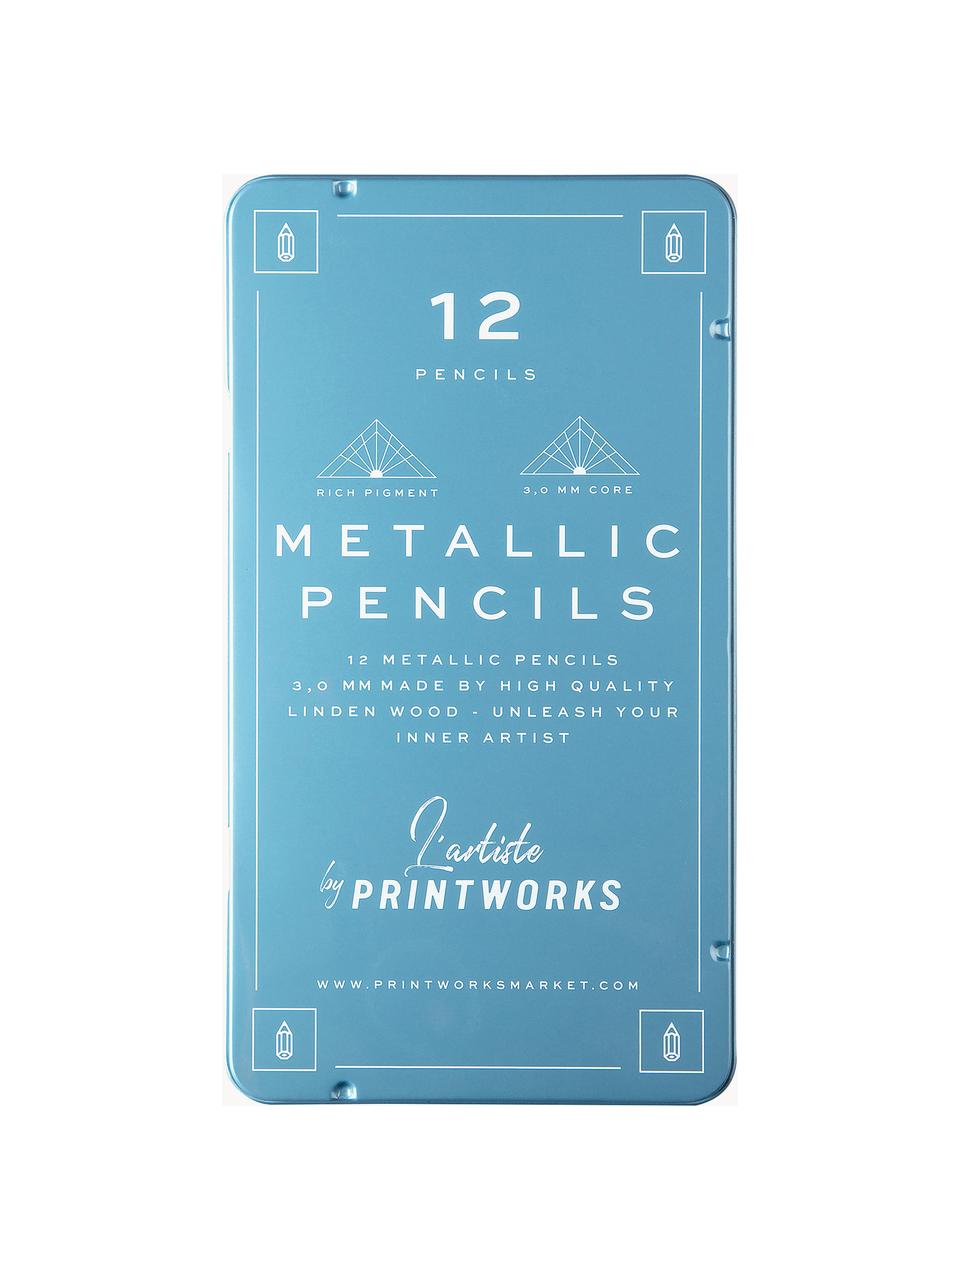 Súprava farebných ceruziek Metallic, 12 dielov, Modrá, Š 11 x V 19 cm